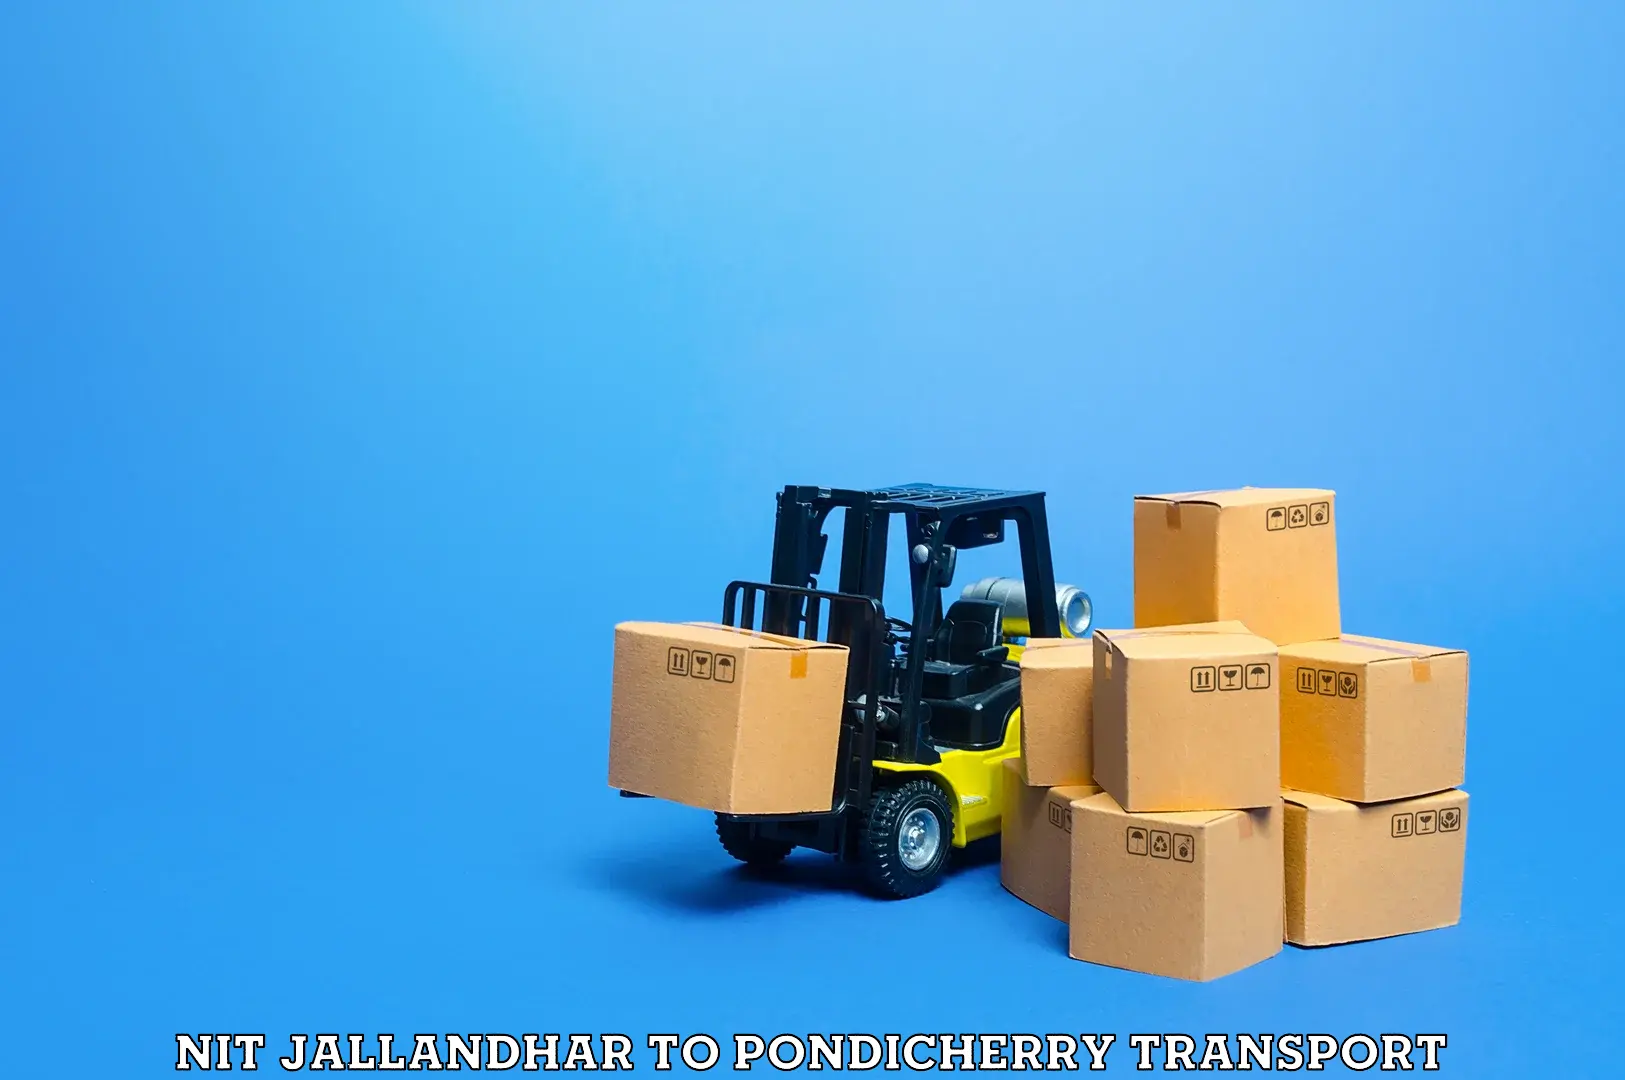 Furniture transport service NIT Jallandhar to NIT Puducherry